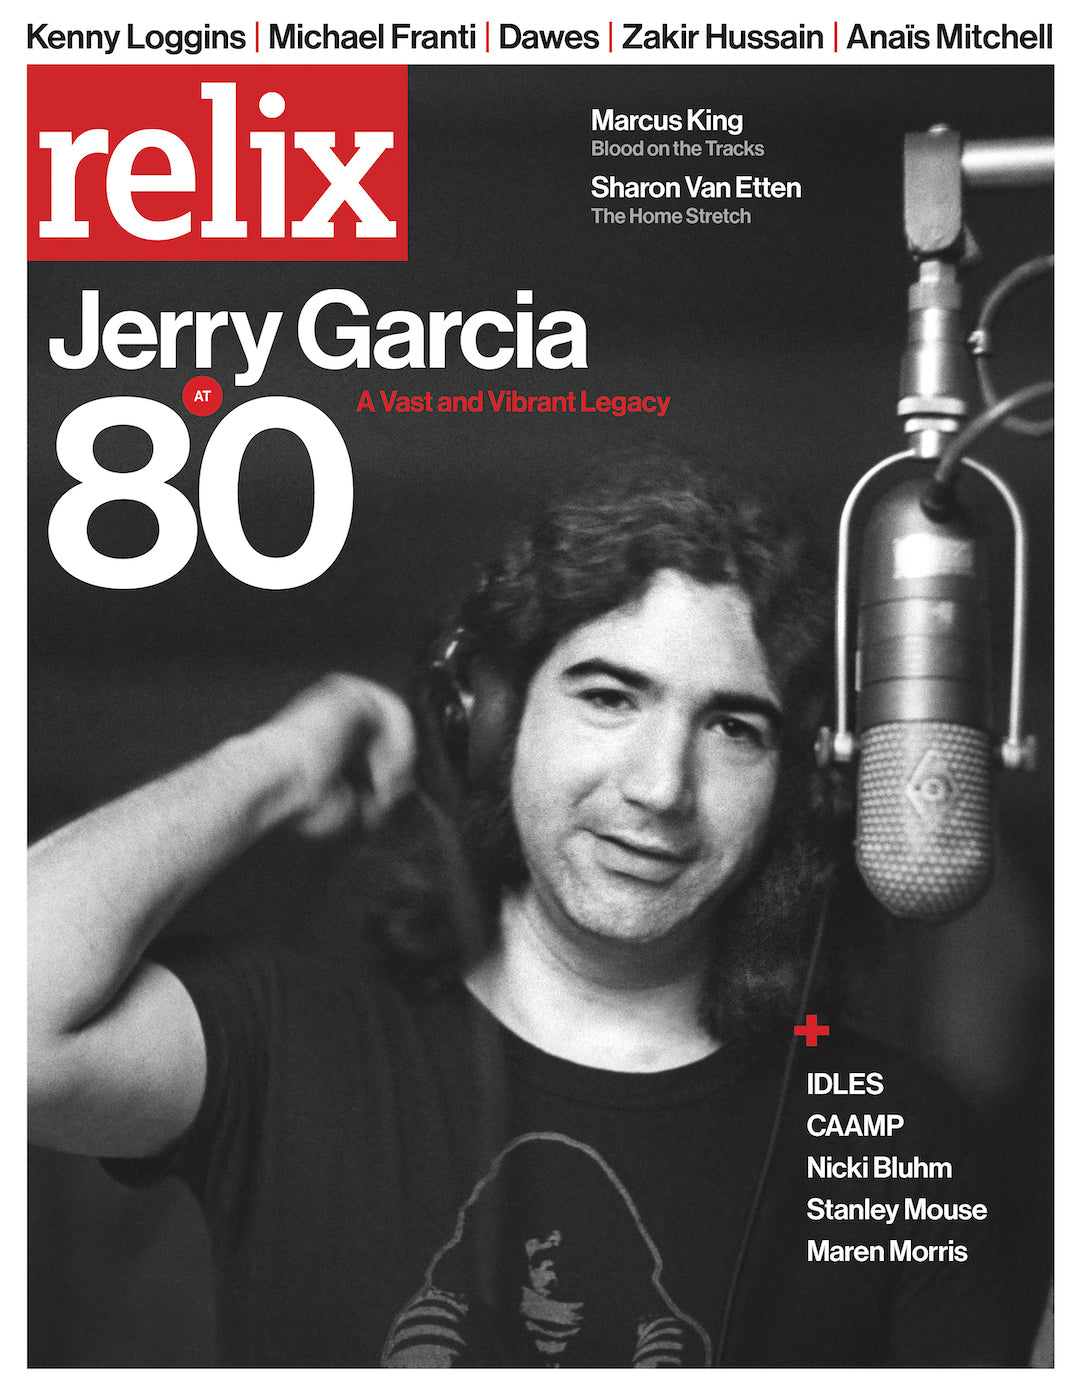 Relix Magazine Subscription – FANS